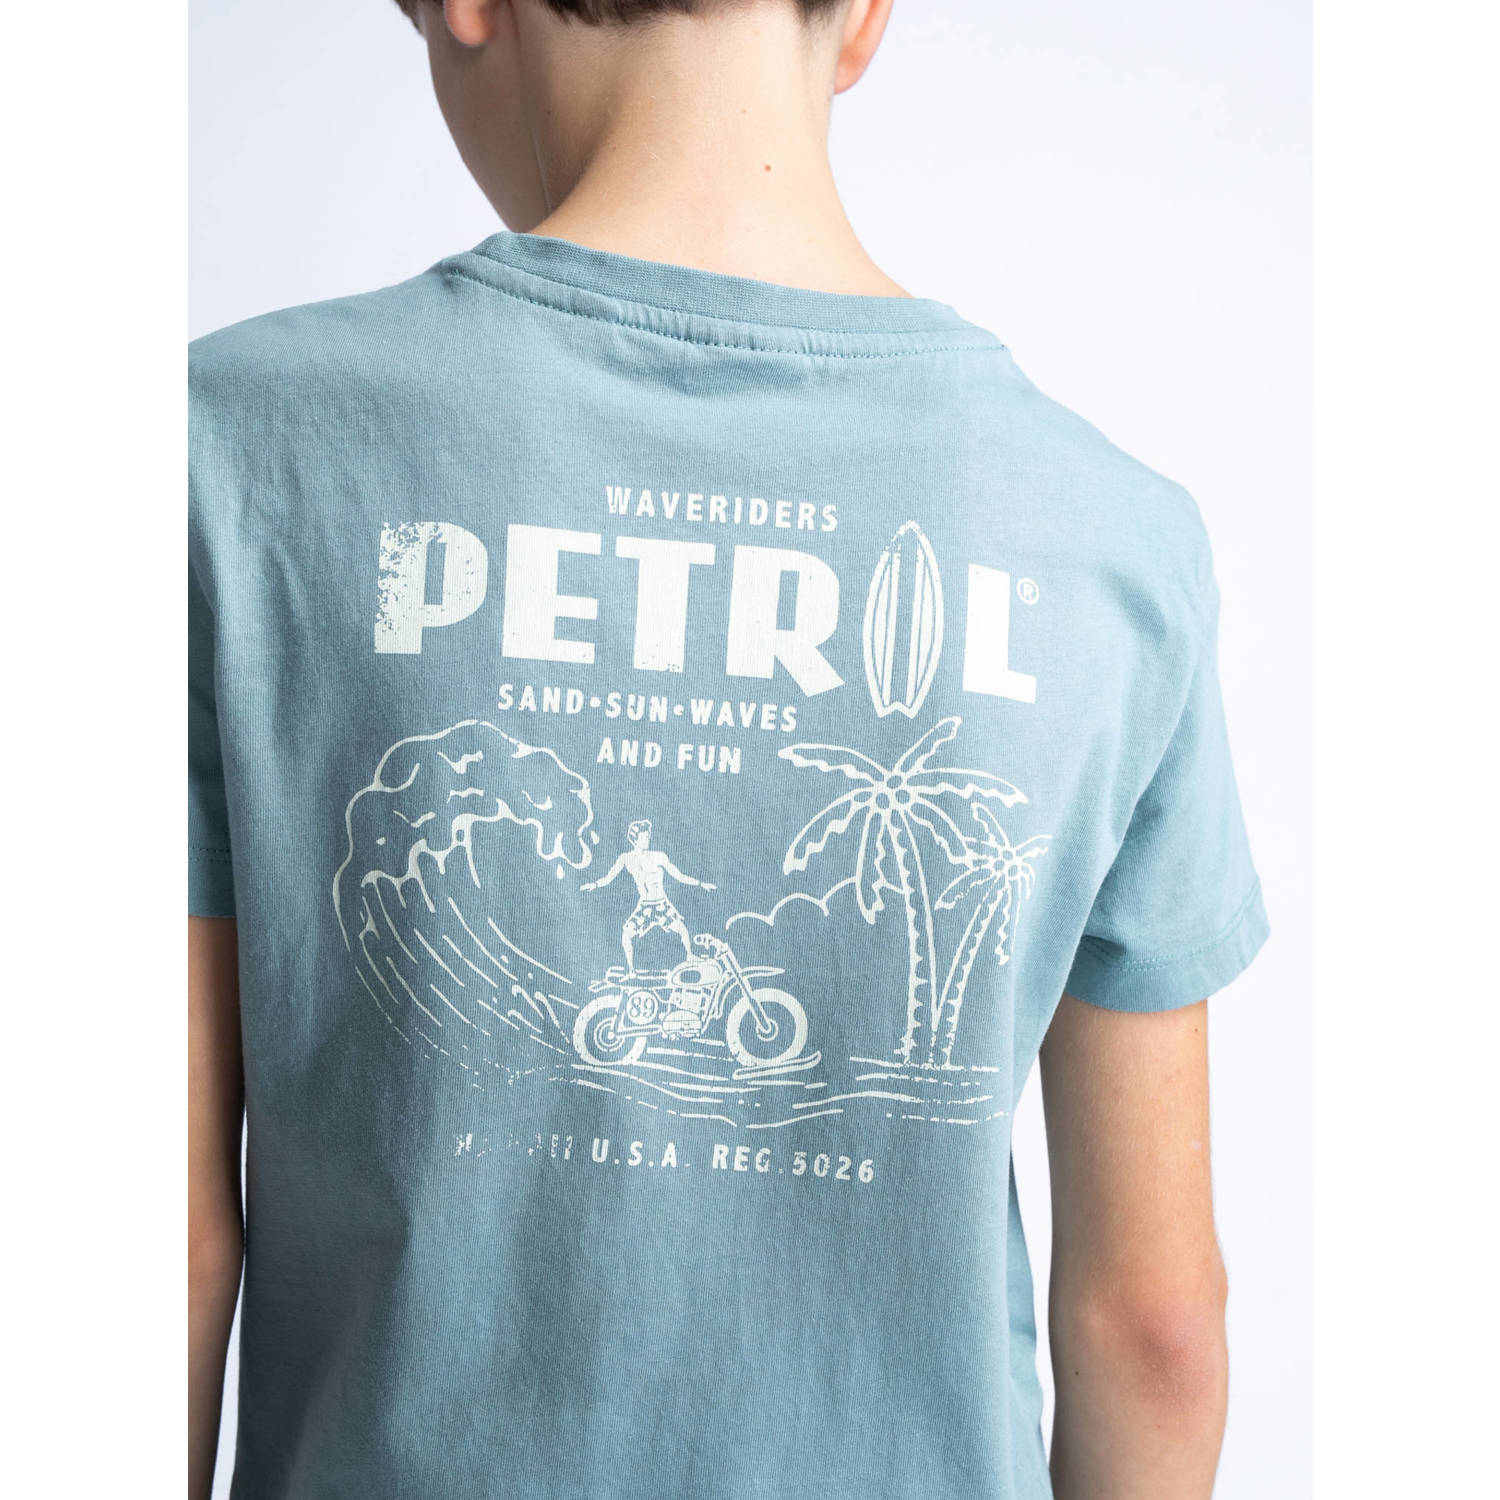 Petrol Industries T-shirt grijsblauw